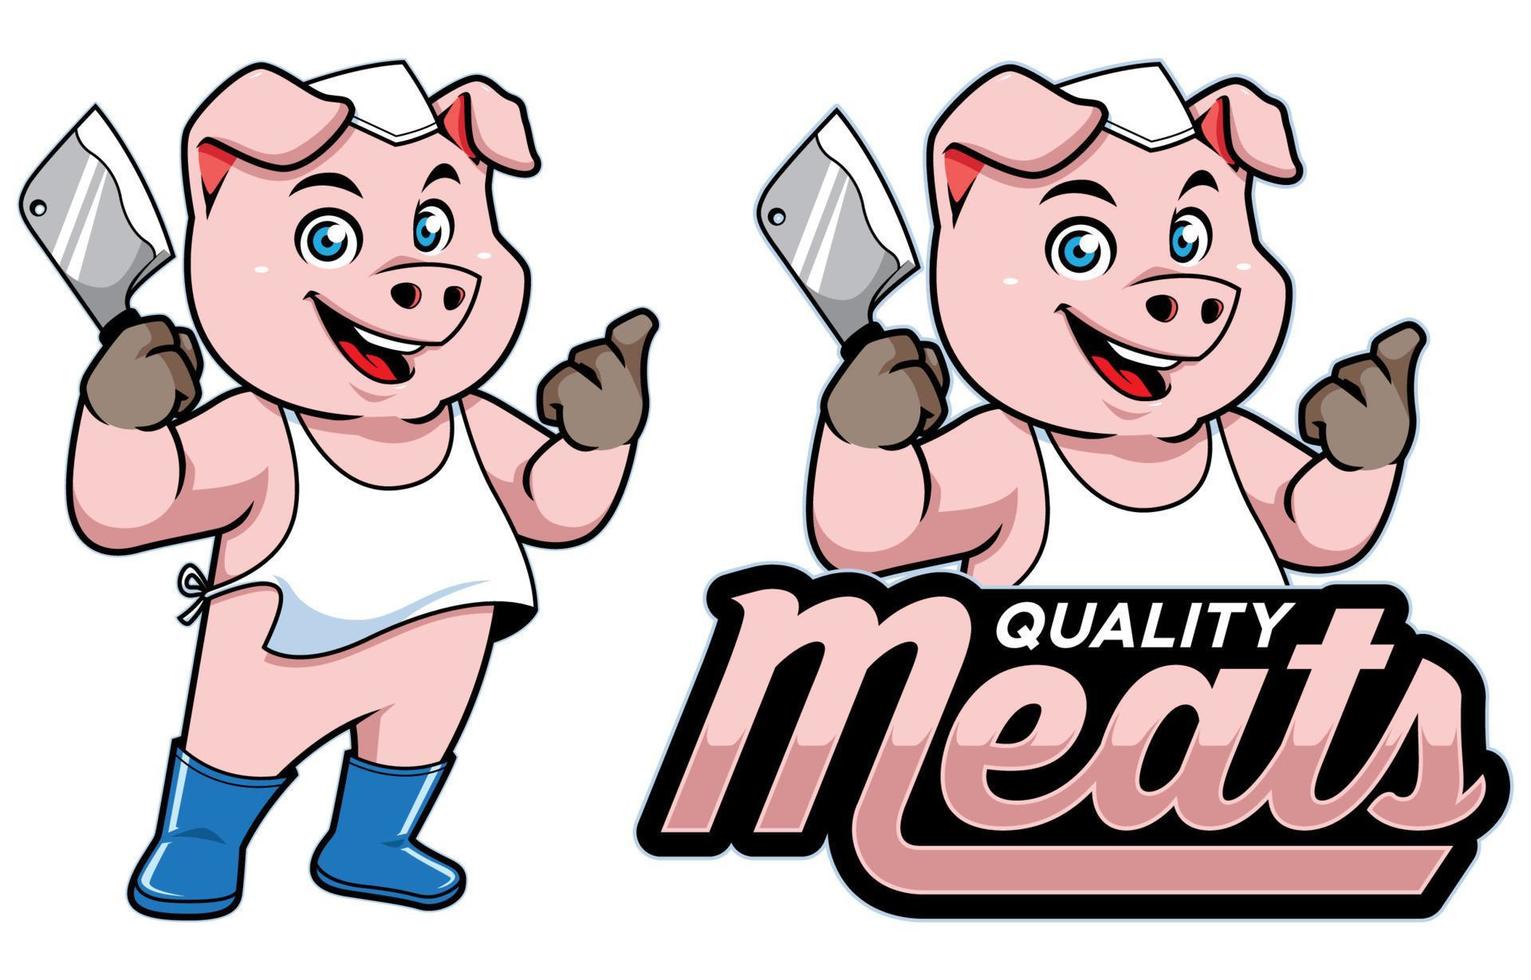 Meat Shop Mascot vector